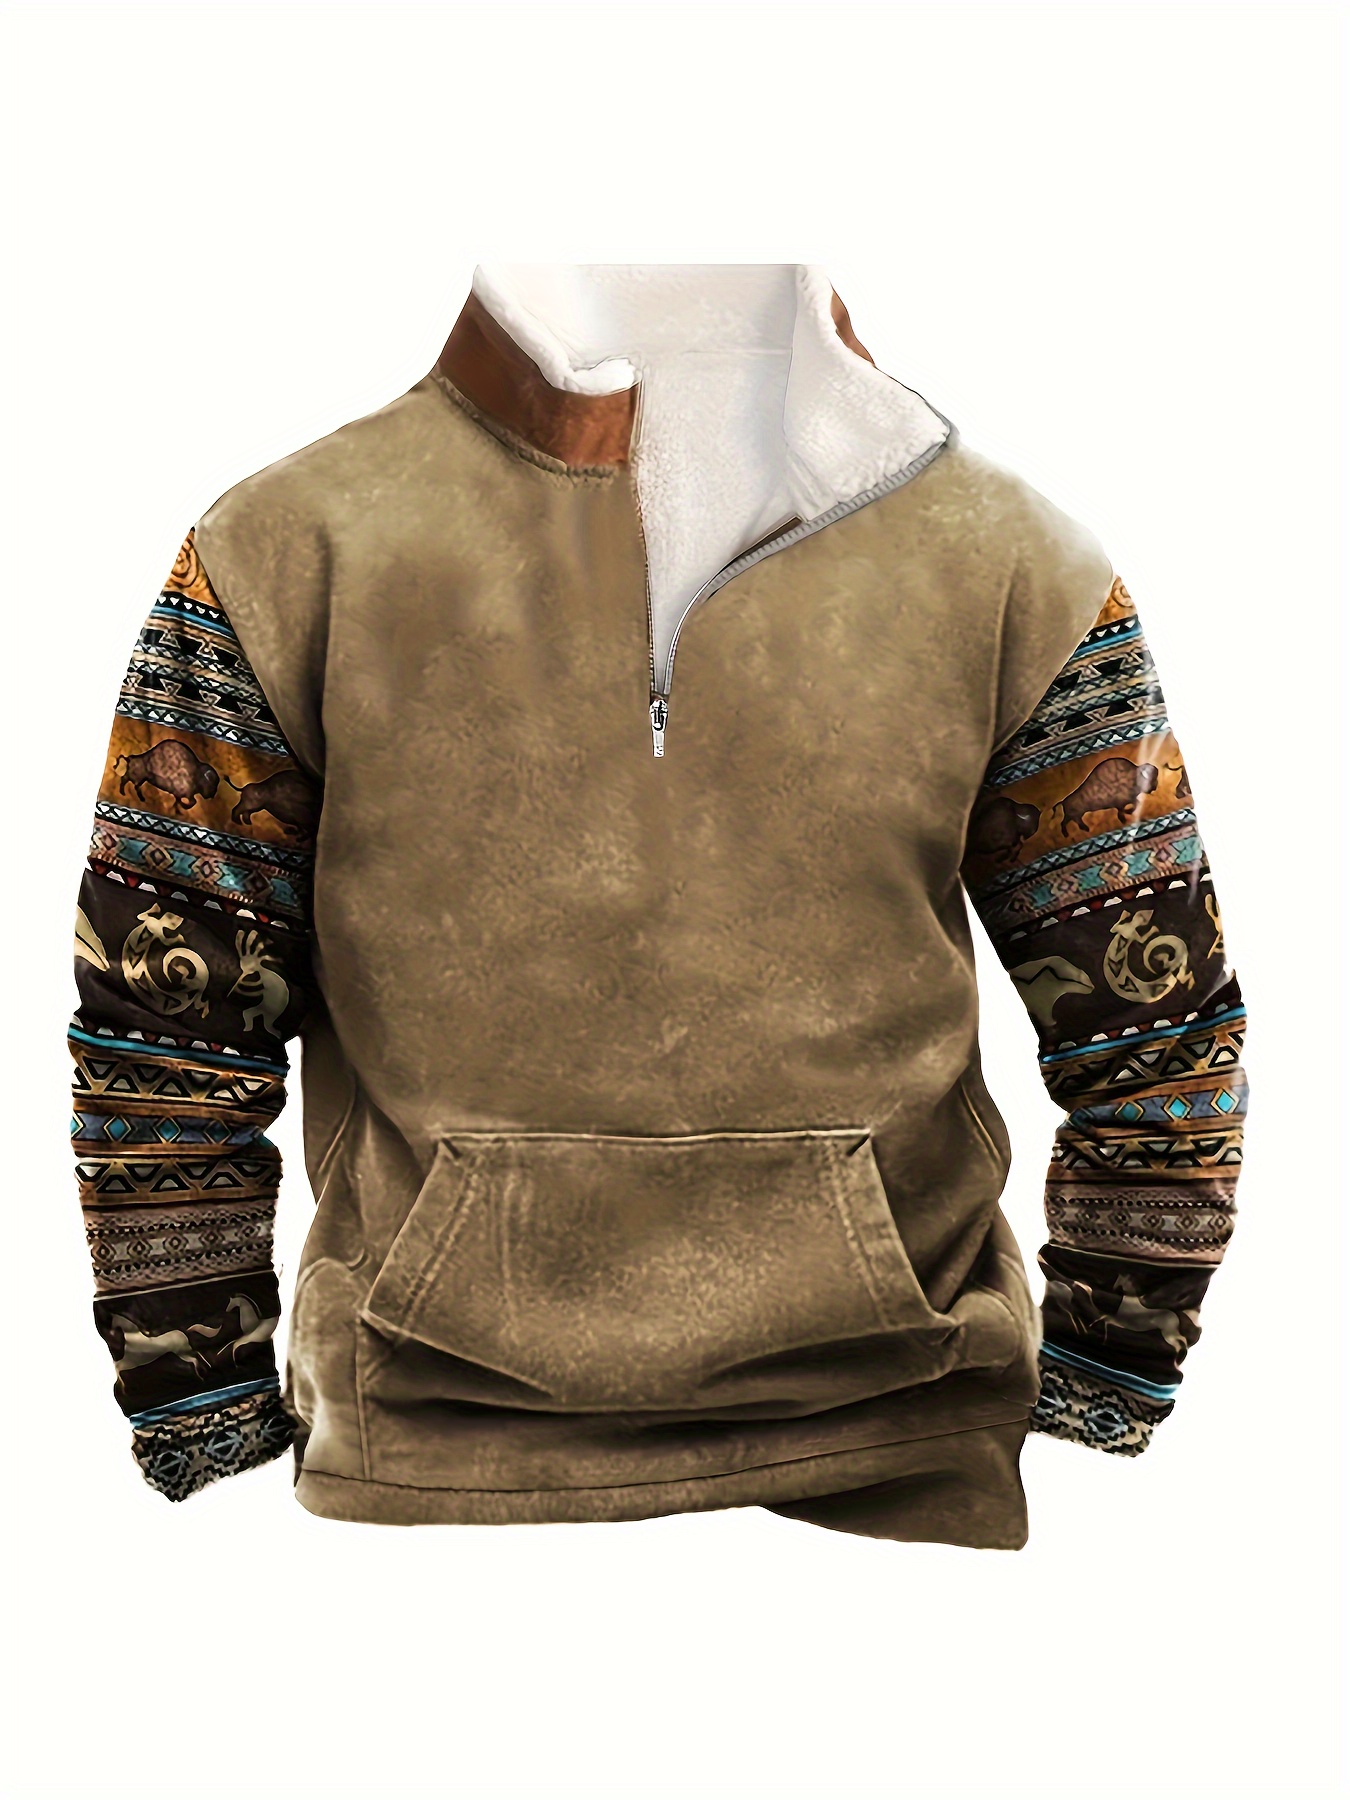 Fleece Lined Sweatshirt | Grey